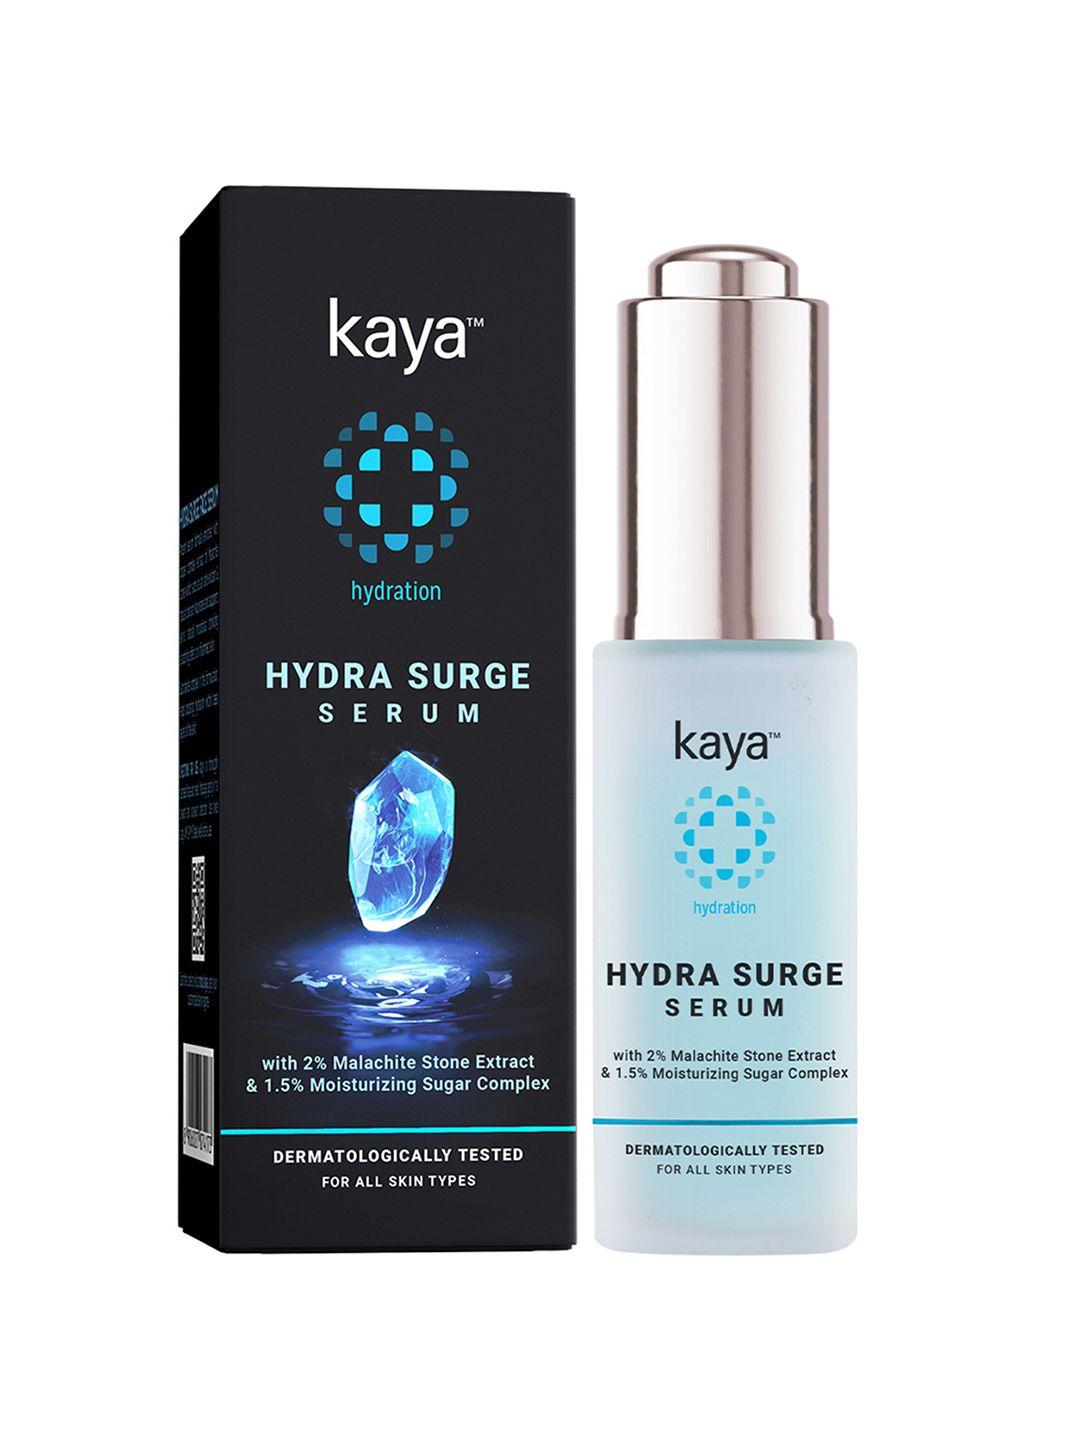 kaya hydra surge face serum with malachite stone extract - 30 ml